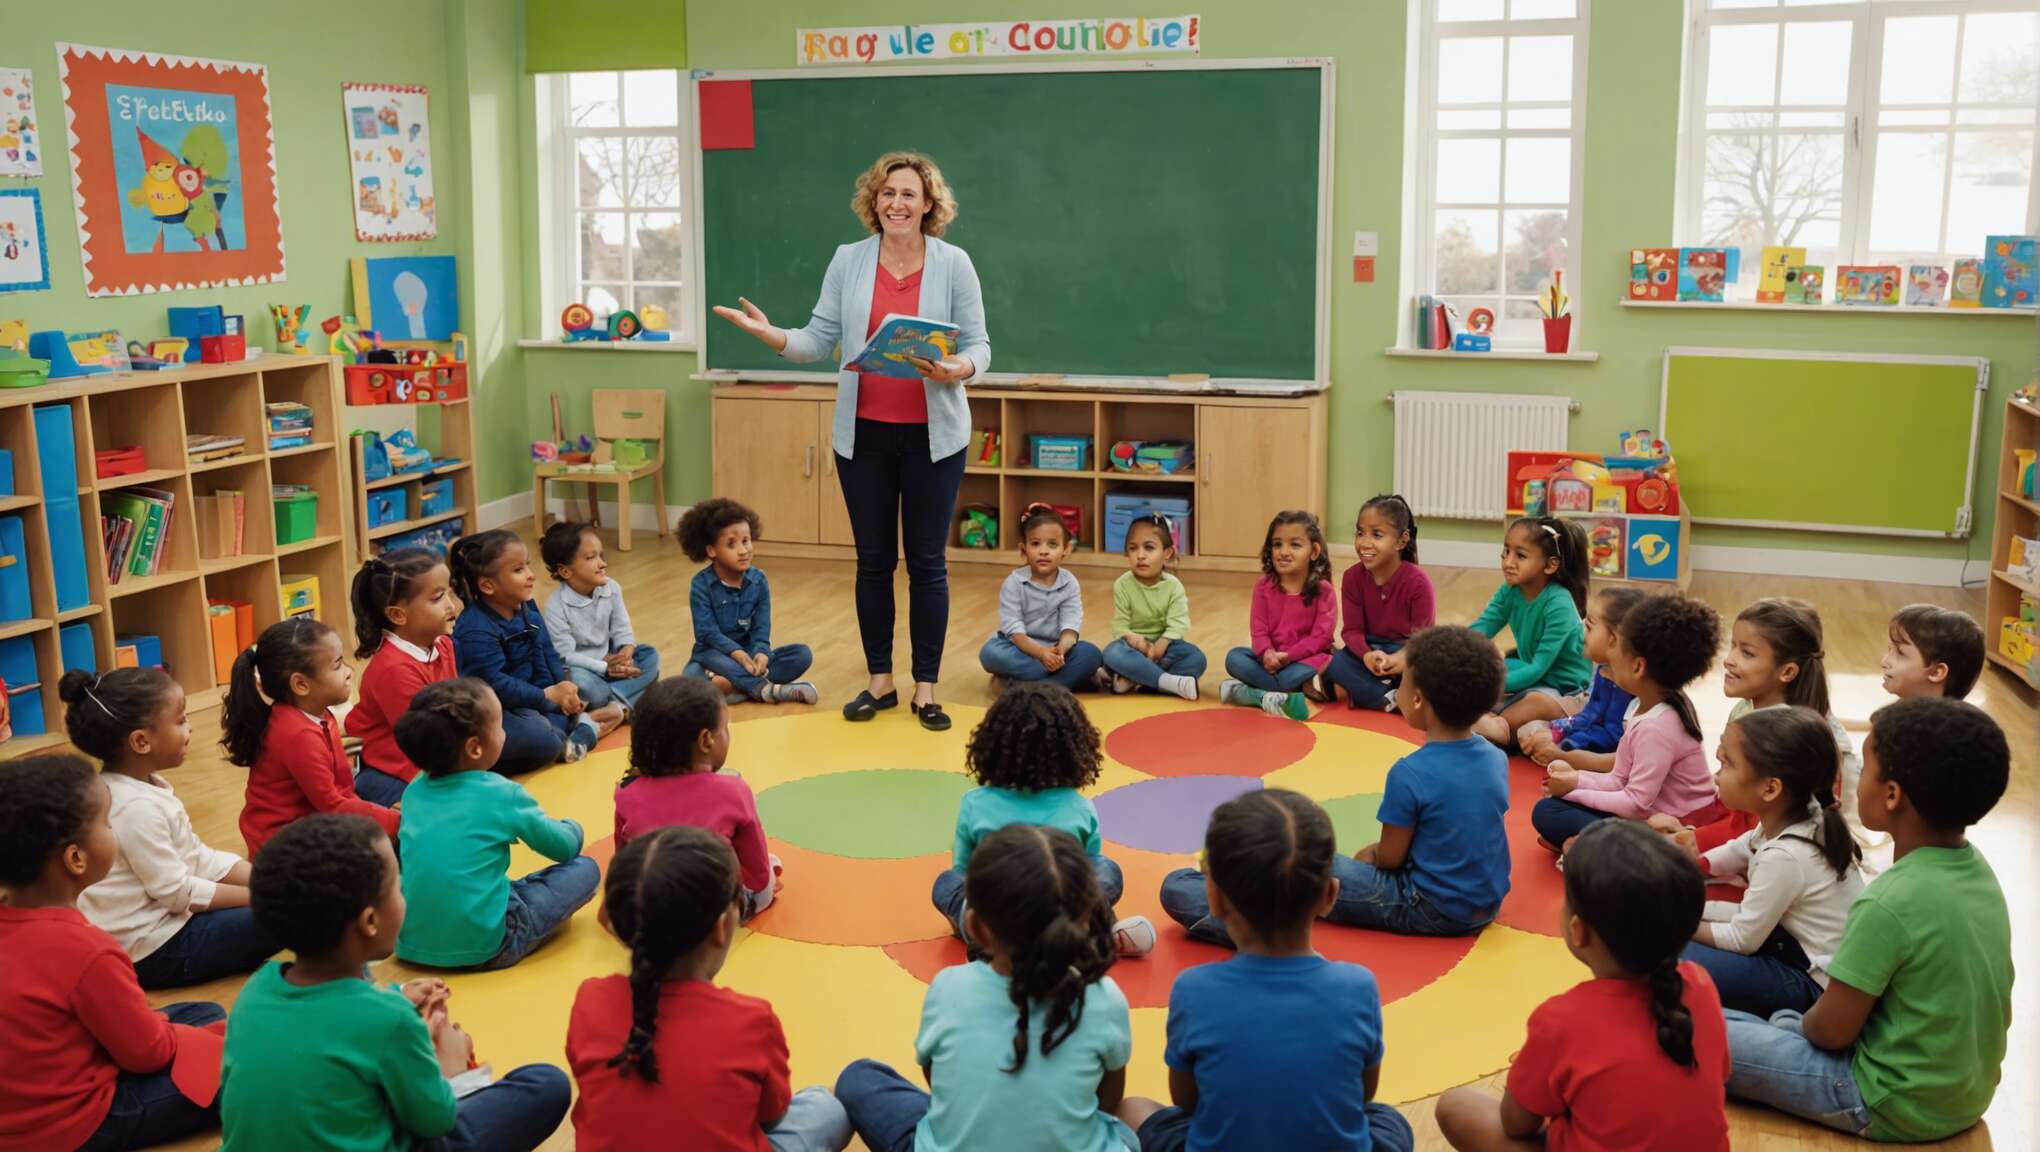 Comment exploiter pédagogiquement l'histoire "Roule Galette" en classe maternelle ?